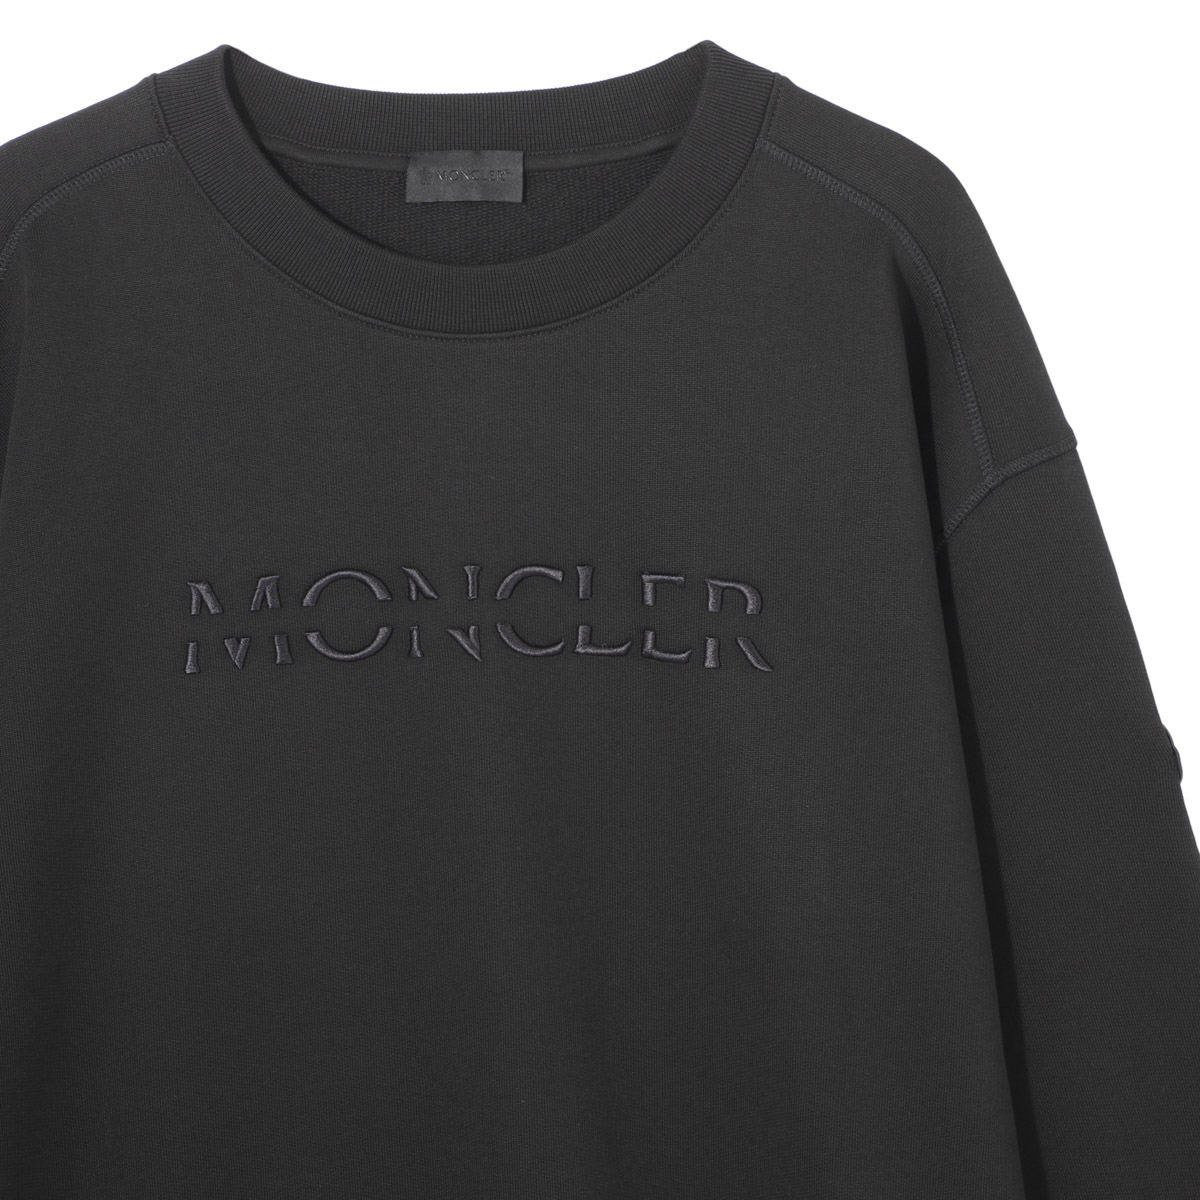 モンクレール MONCLER スウェットシャツ 809kr 8g00010 メンズ 999